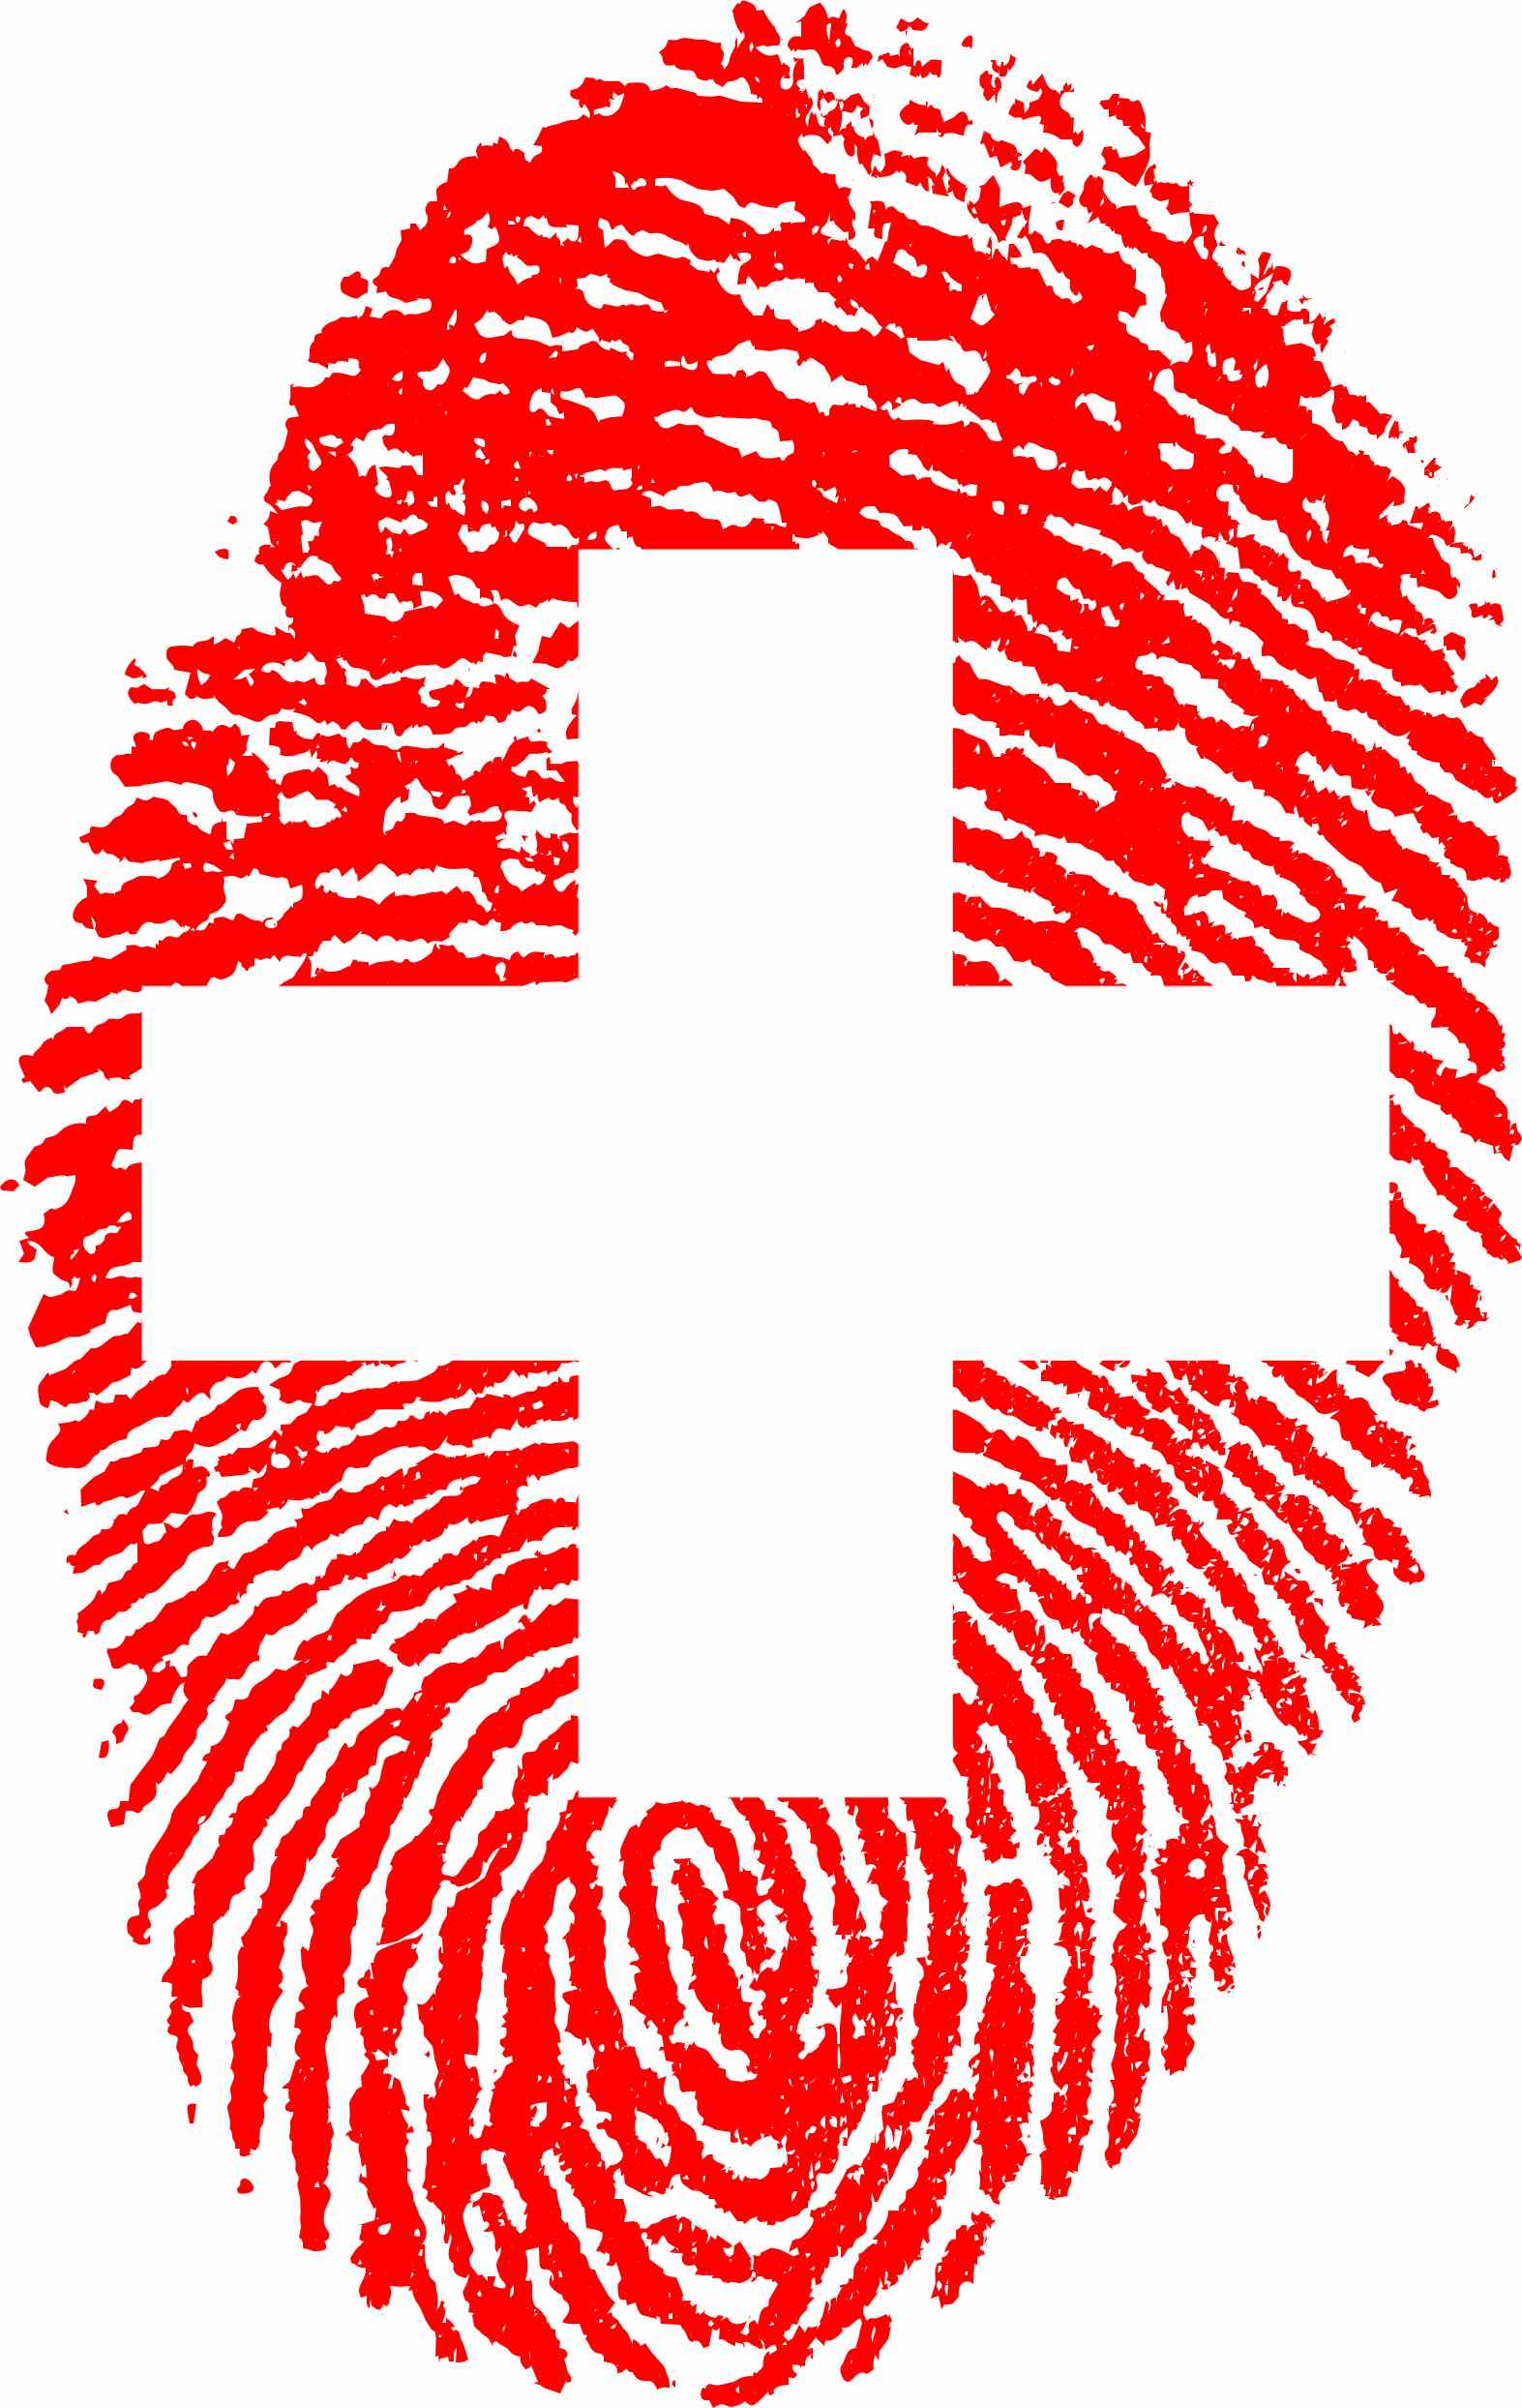 Bild: Schweiz-Flagge in Form eines Fingerabdruckes